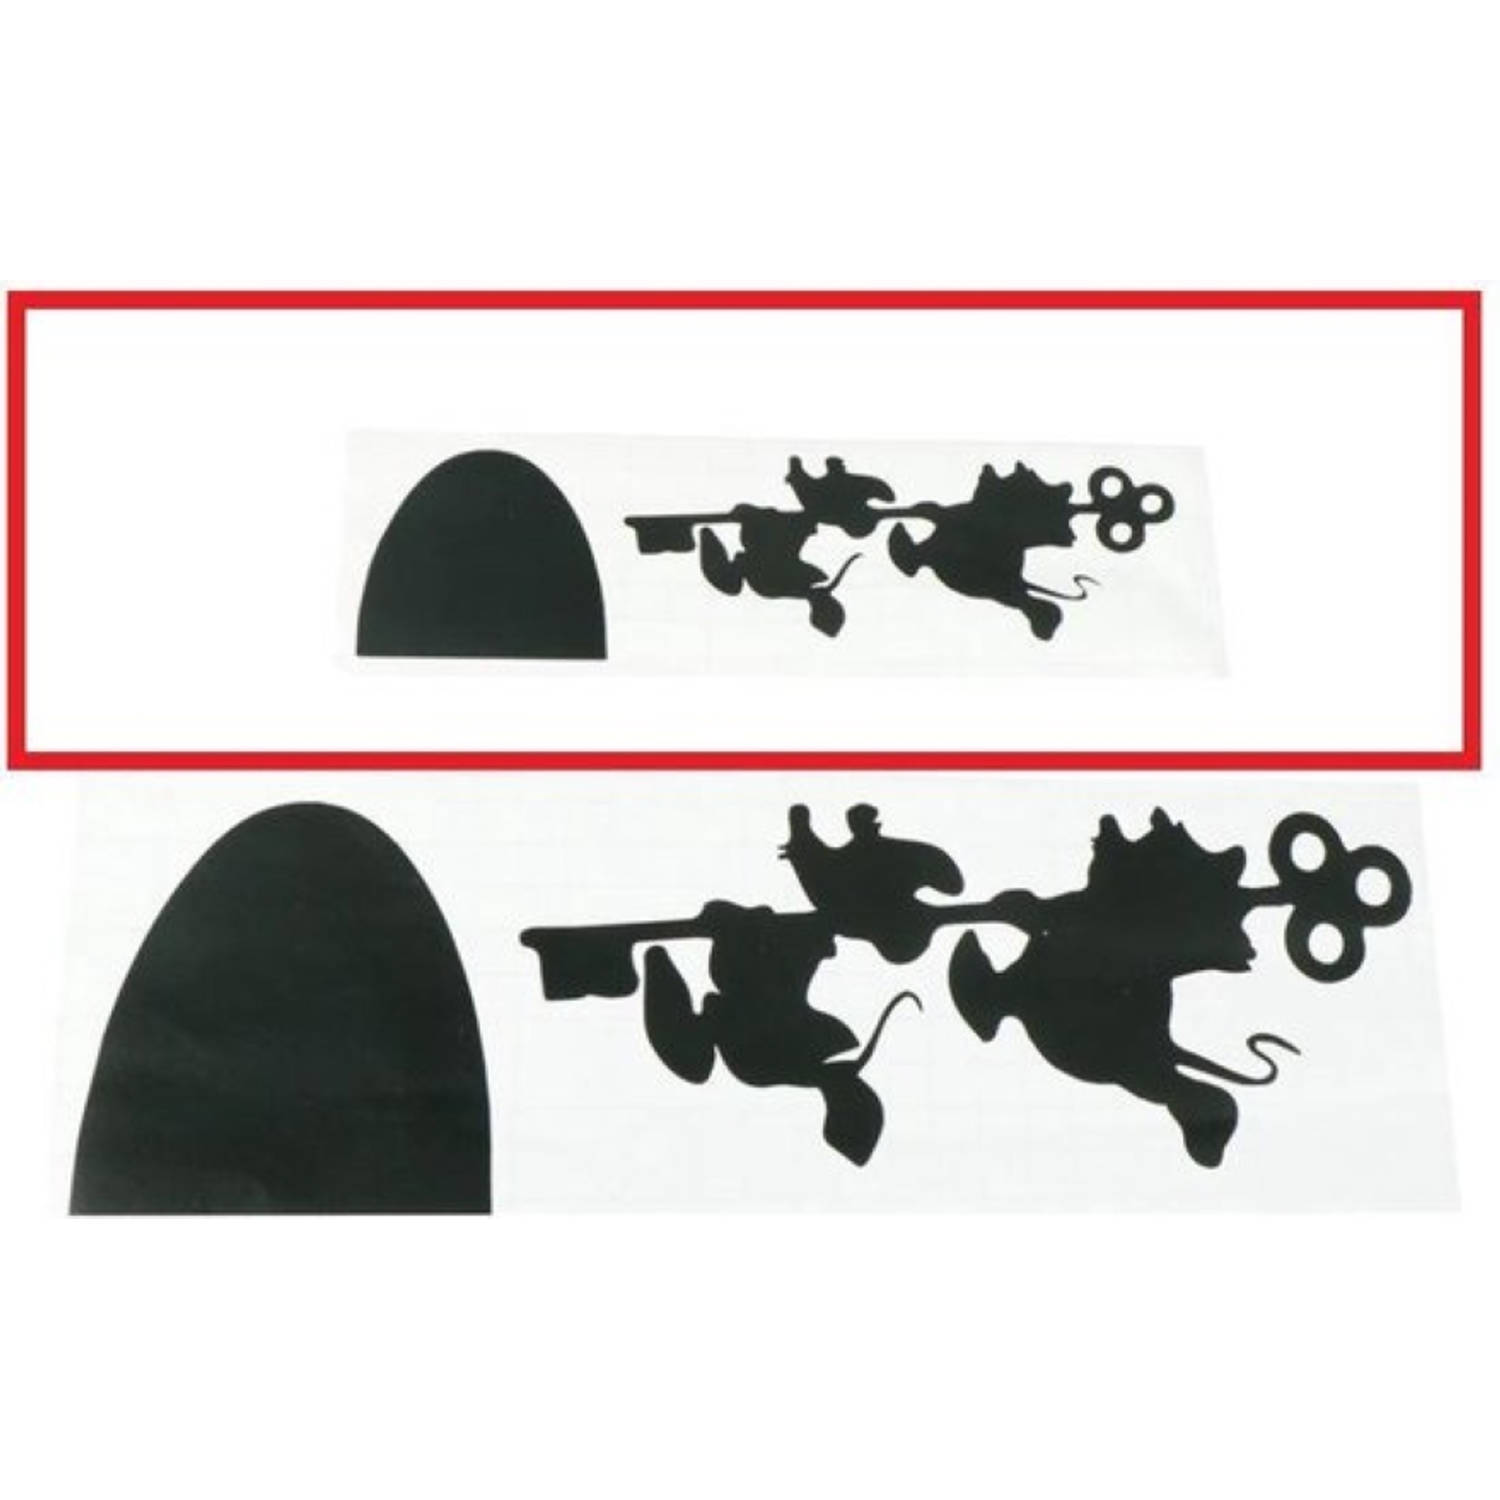 Muursticker Plintsticker Zwart Muizen met sleutel lopen naar links 18 cm x 6 cm woonkamer zolder slaapkamer